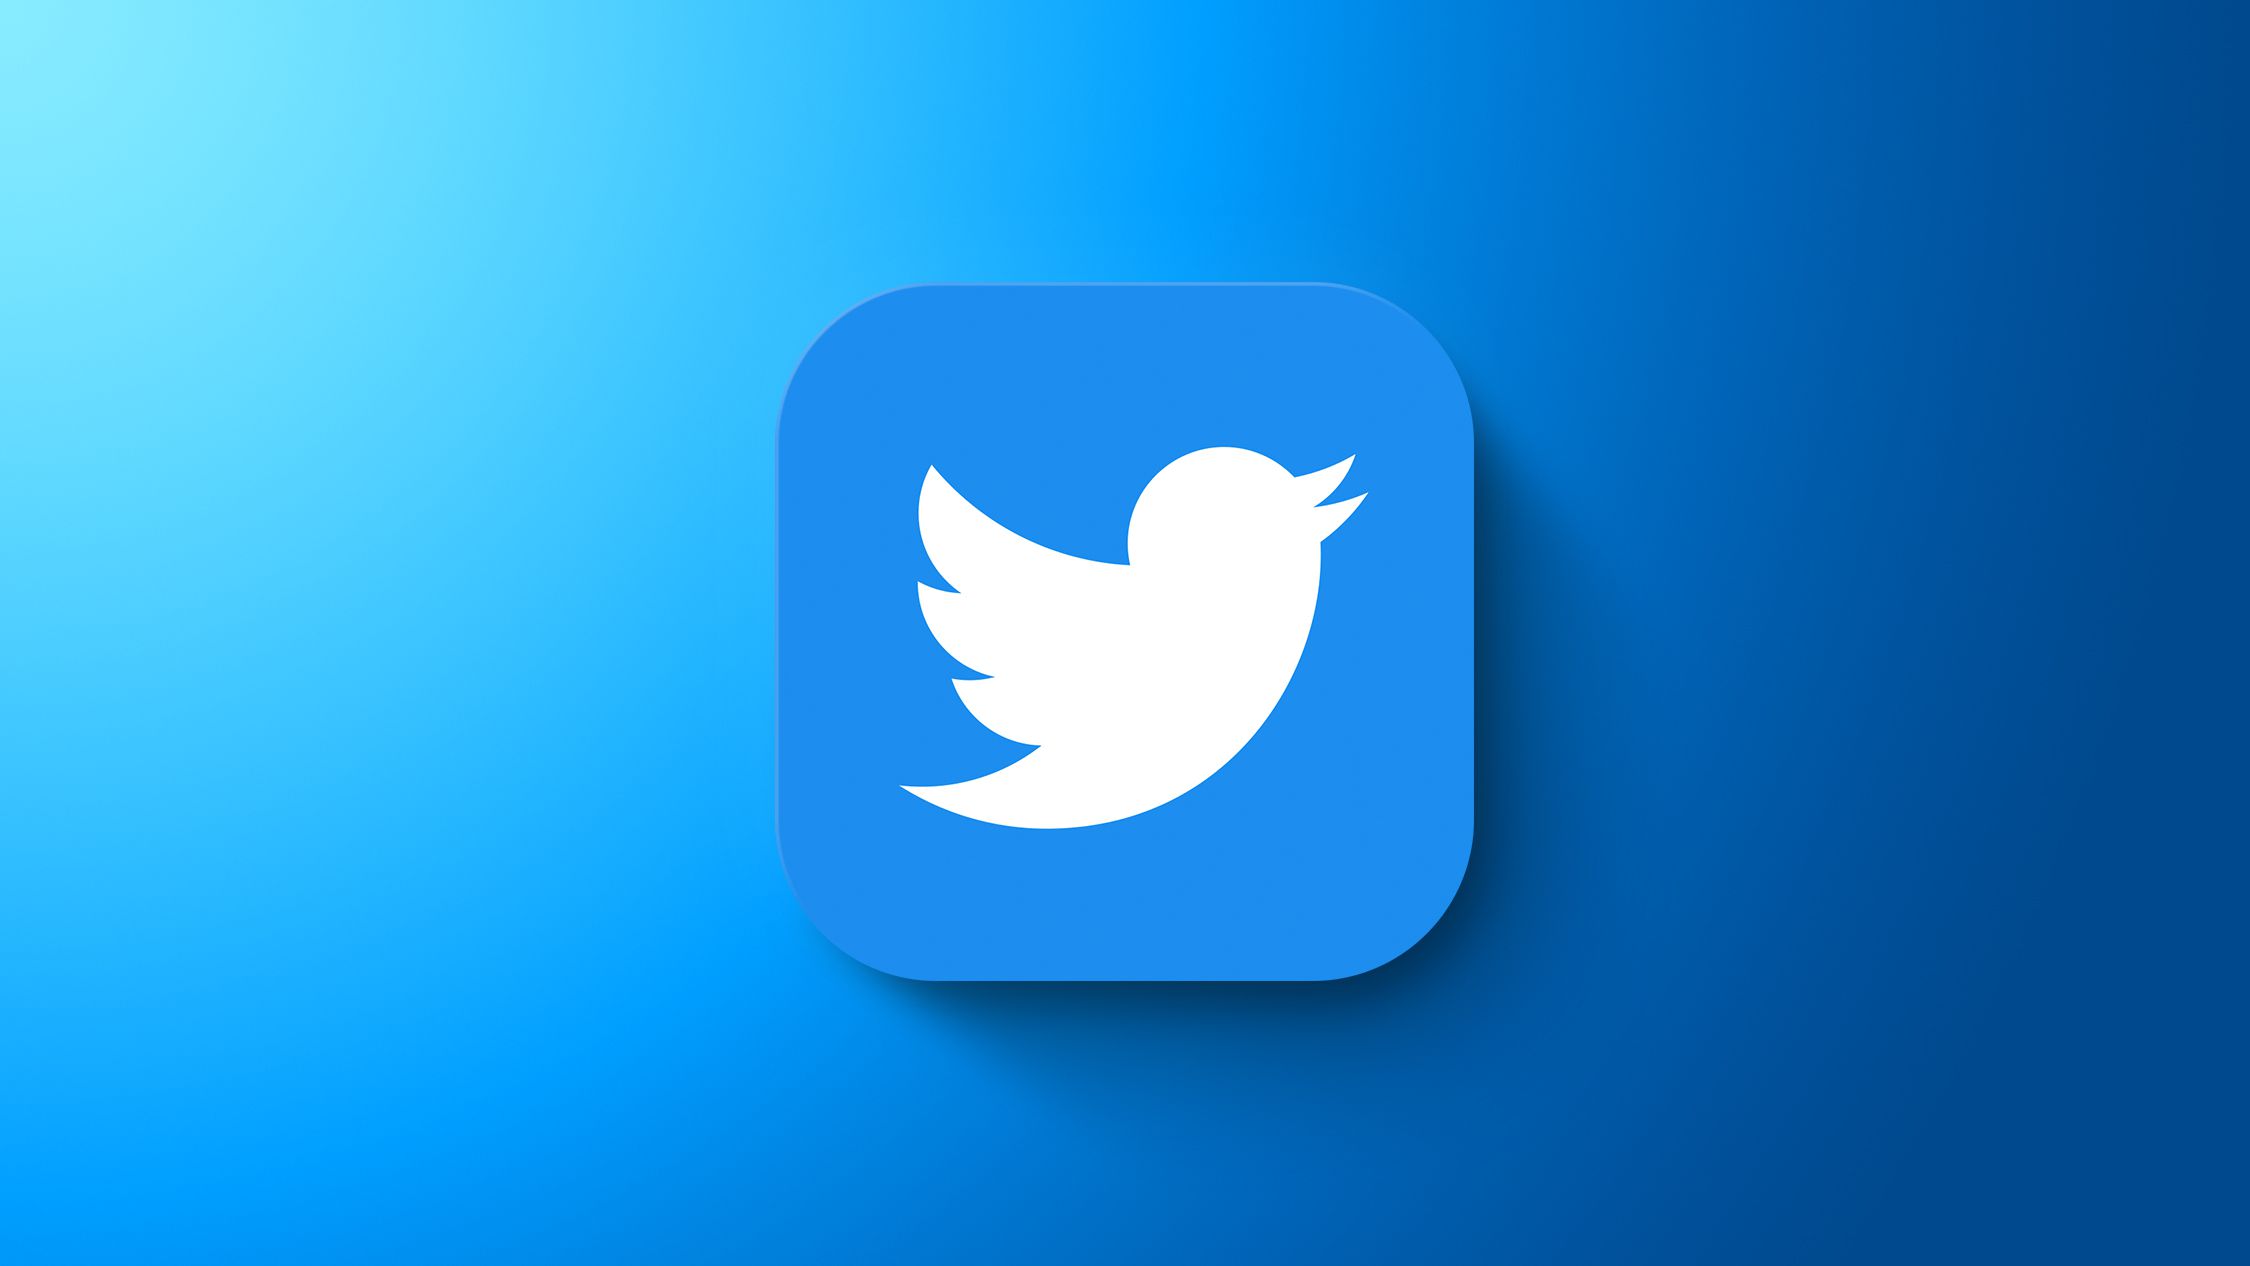 Νέο σοβαρό πρόβλημα στο Twitter: Χιλιάδες χρήστες δεν μπορούν να συνδεθούν (φωτό)